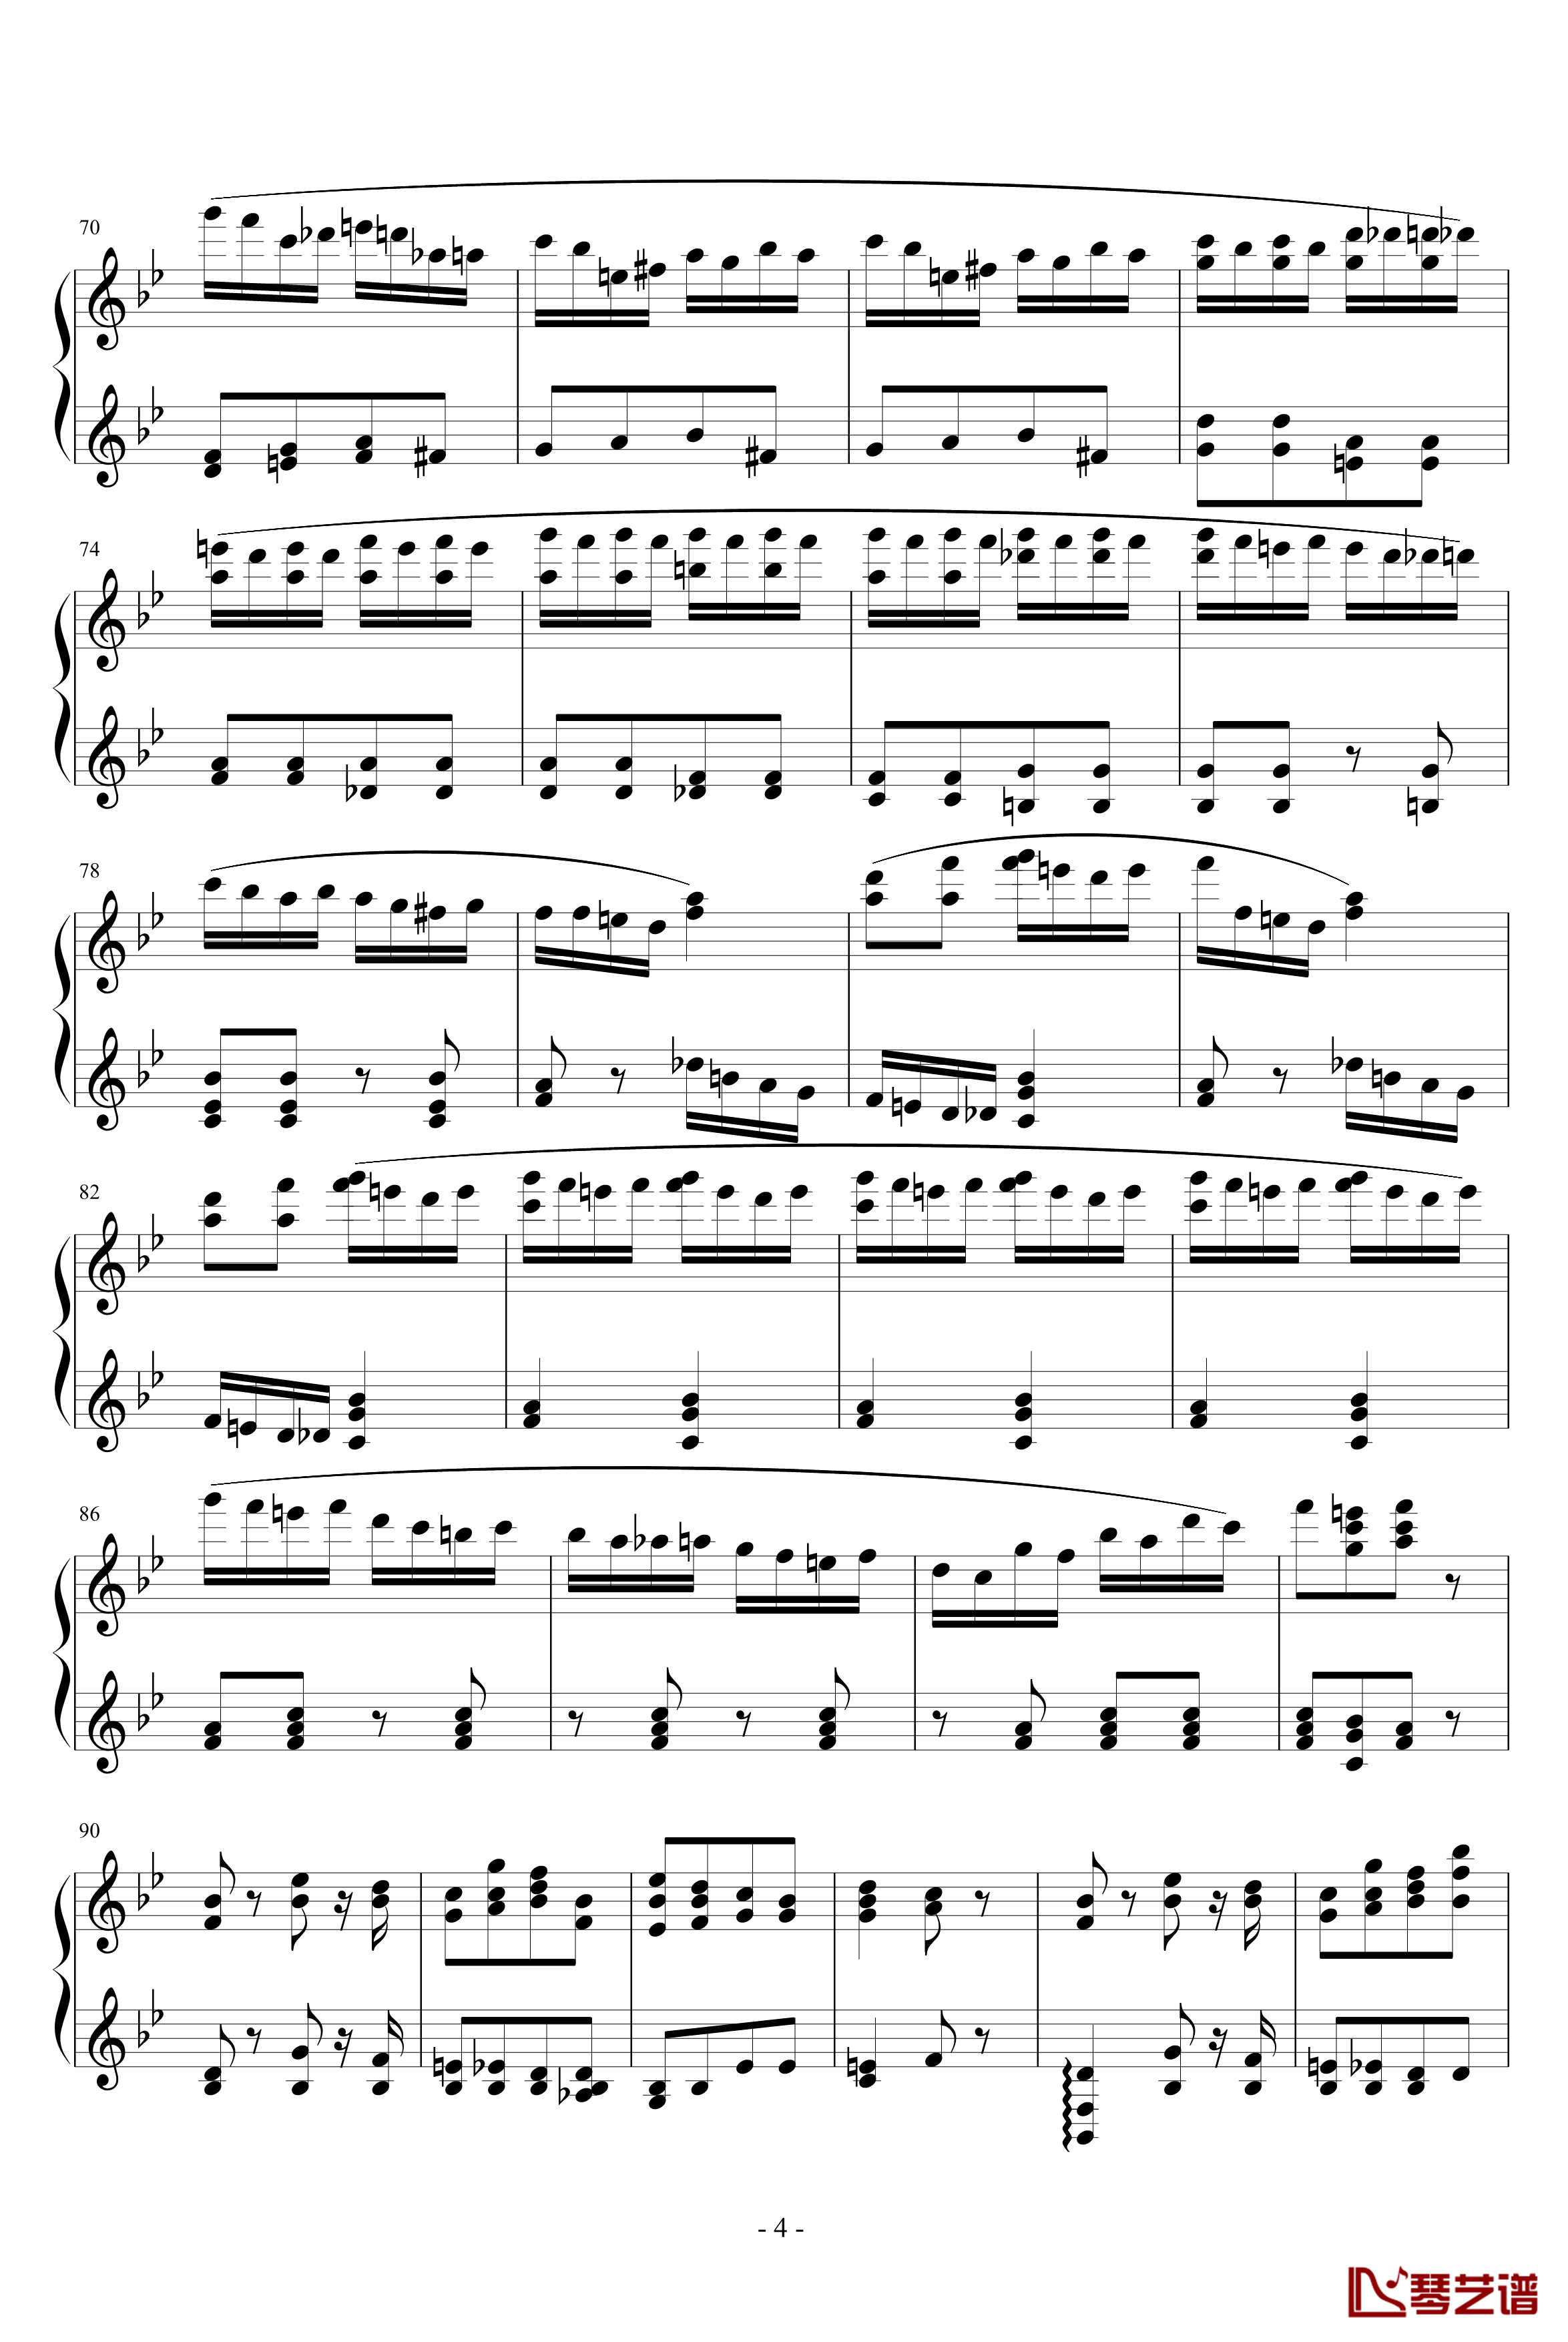 胡桃夹子序曲钢琴谱-柴科夫斯基-Peter Ilyich Tchaikovsky4